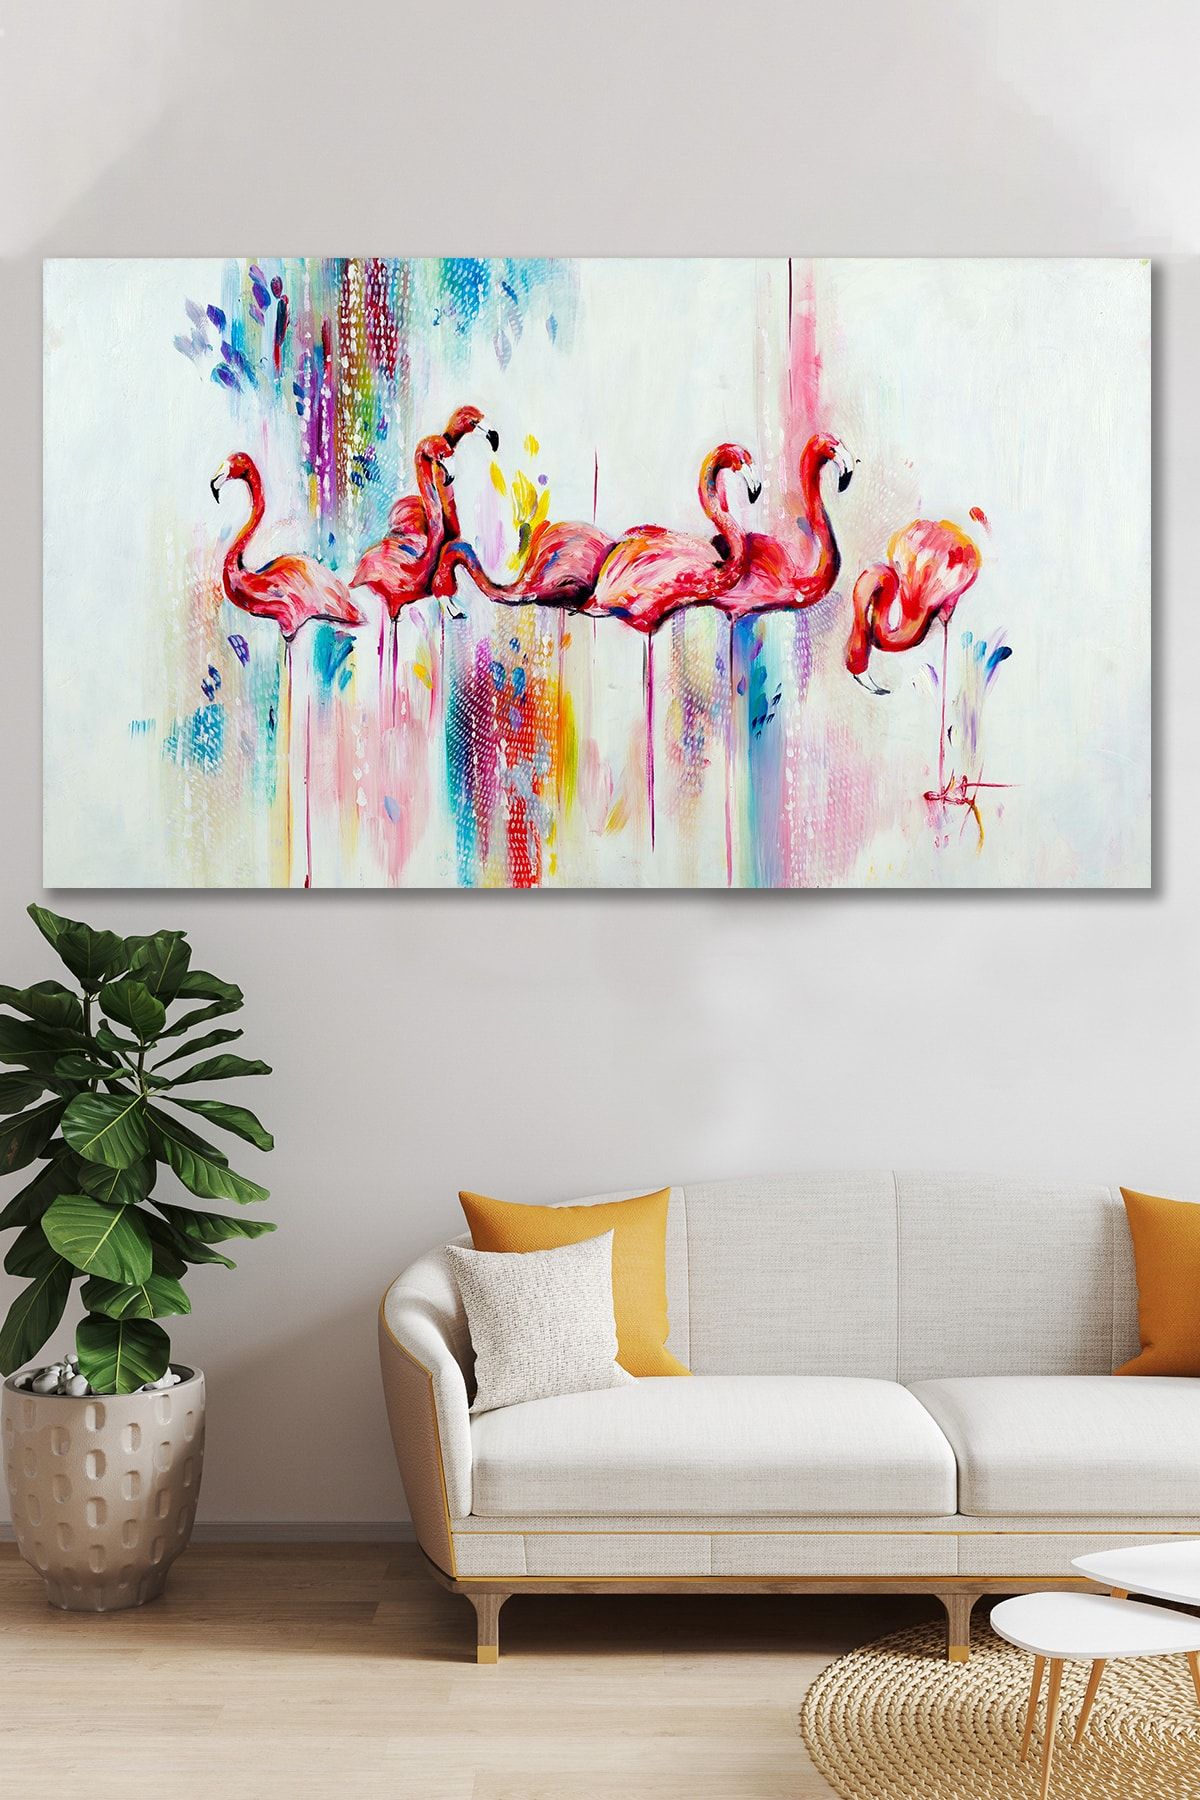 Hediyeler Kapında Yağlı Boya Görünümlü Flamingo Kanvas Tablo 70x100